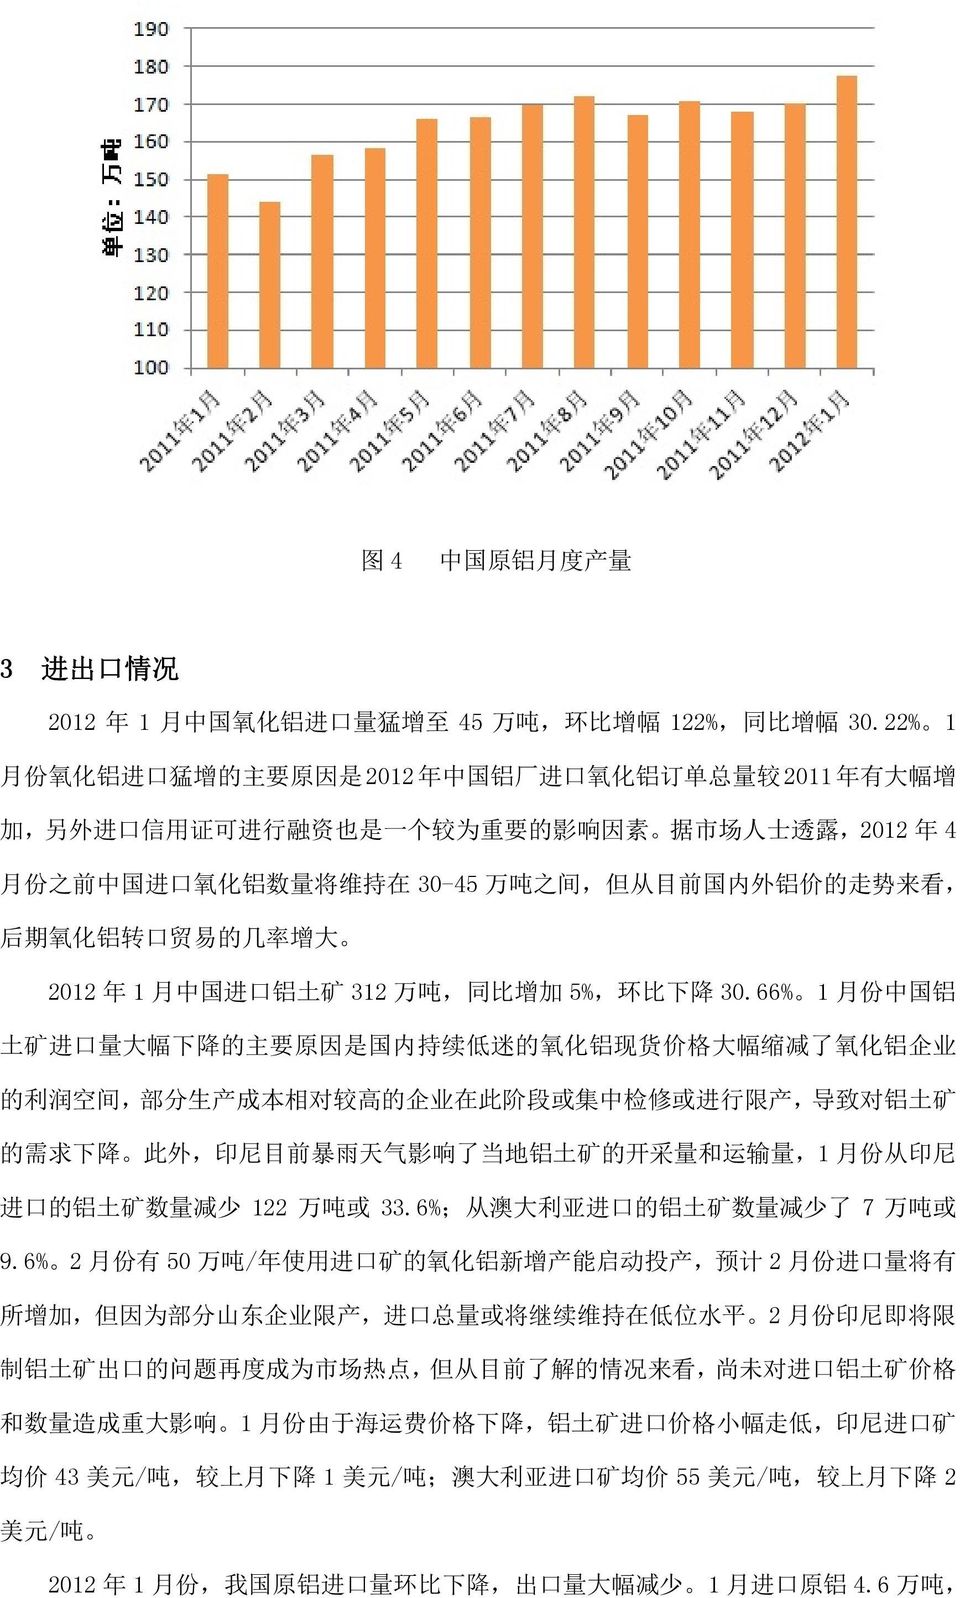 30-45 万 吨 之 间, 但 从 目 前 国 内 外 铝 价 的 走 势 来 看, 后 期 氧 化 铝 转 口 贸 易 的 几 率 增 大 2012 年 1 月 中 国 进 口 铝 土 矿 312 万 吨, 同 比 增 加 5%, 环 比 下 降 30.